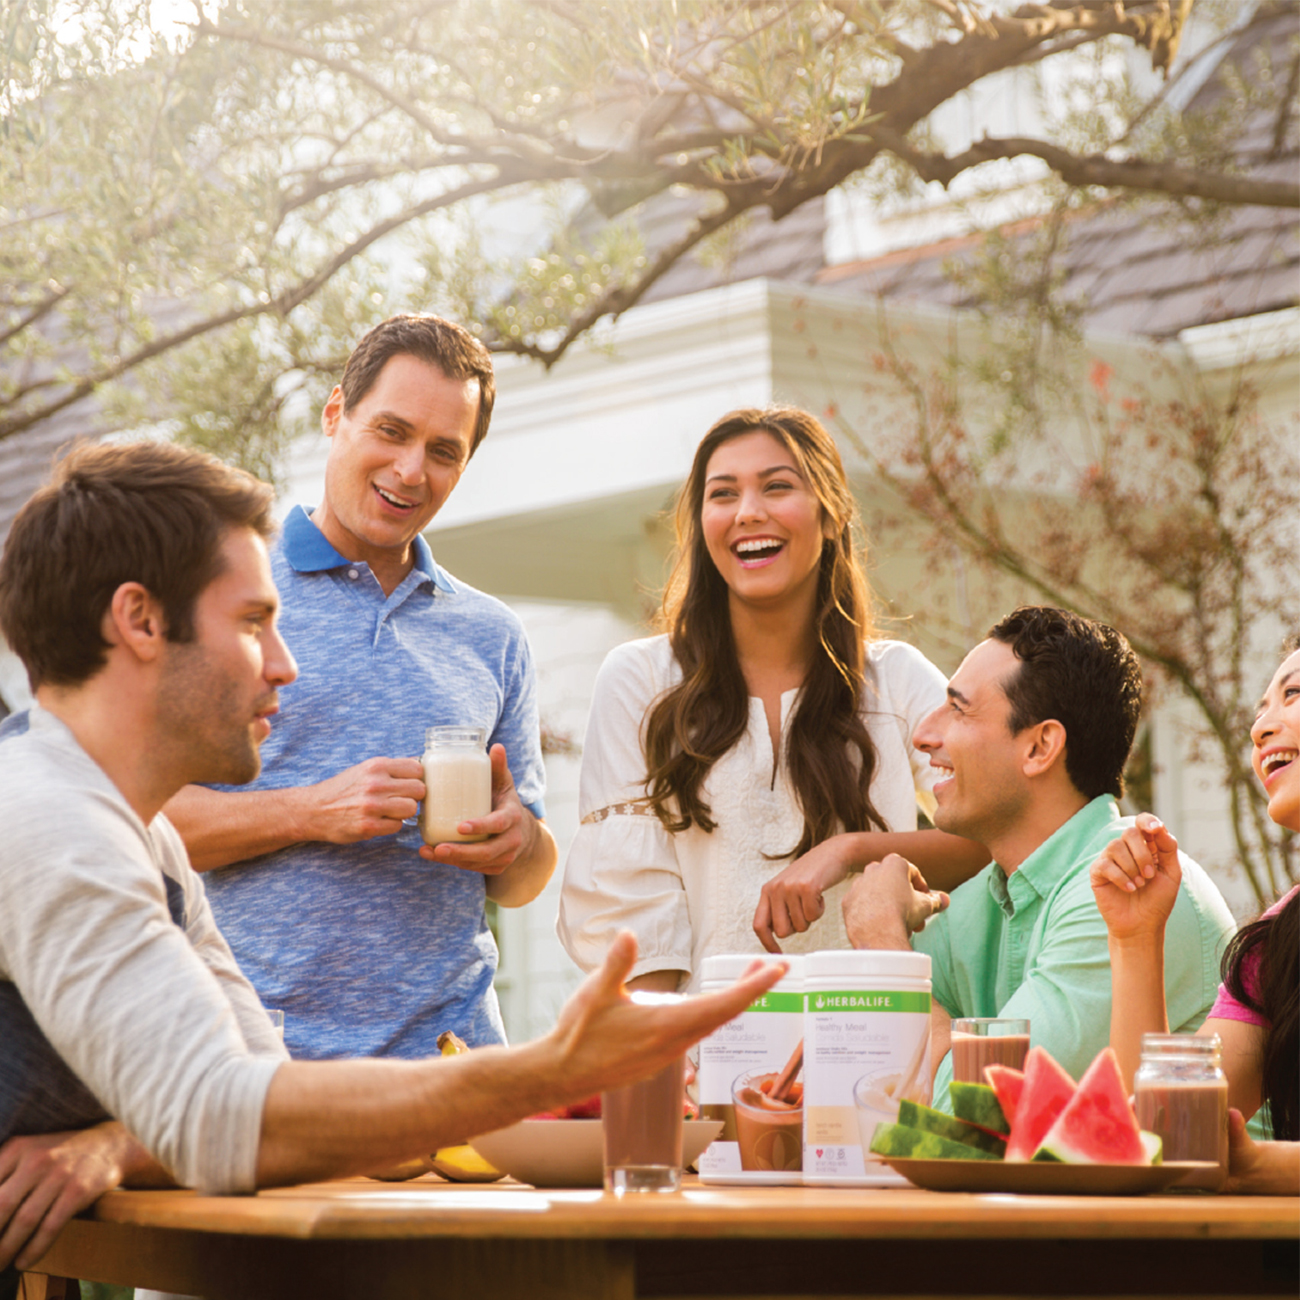 Skupina prijatelja okupljena u vrtu pije Herbalife Nutrition shakeove